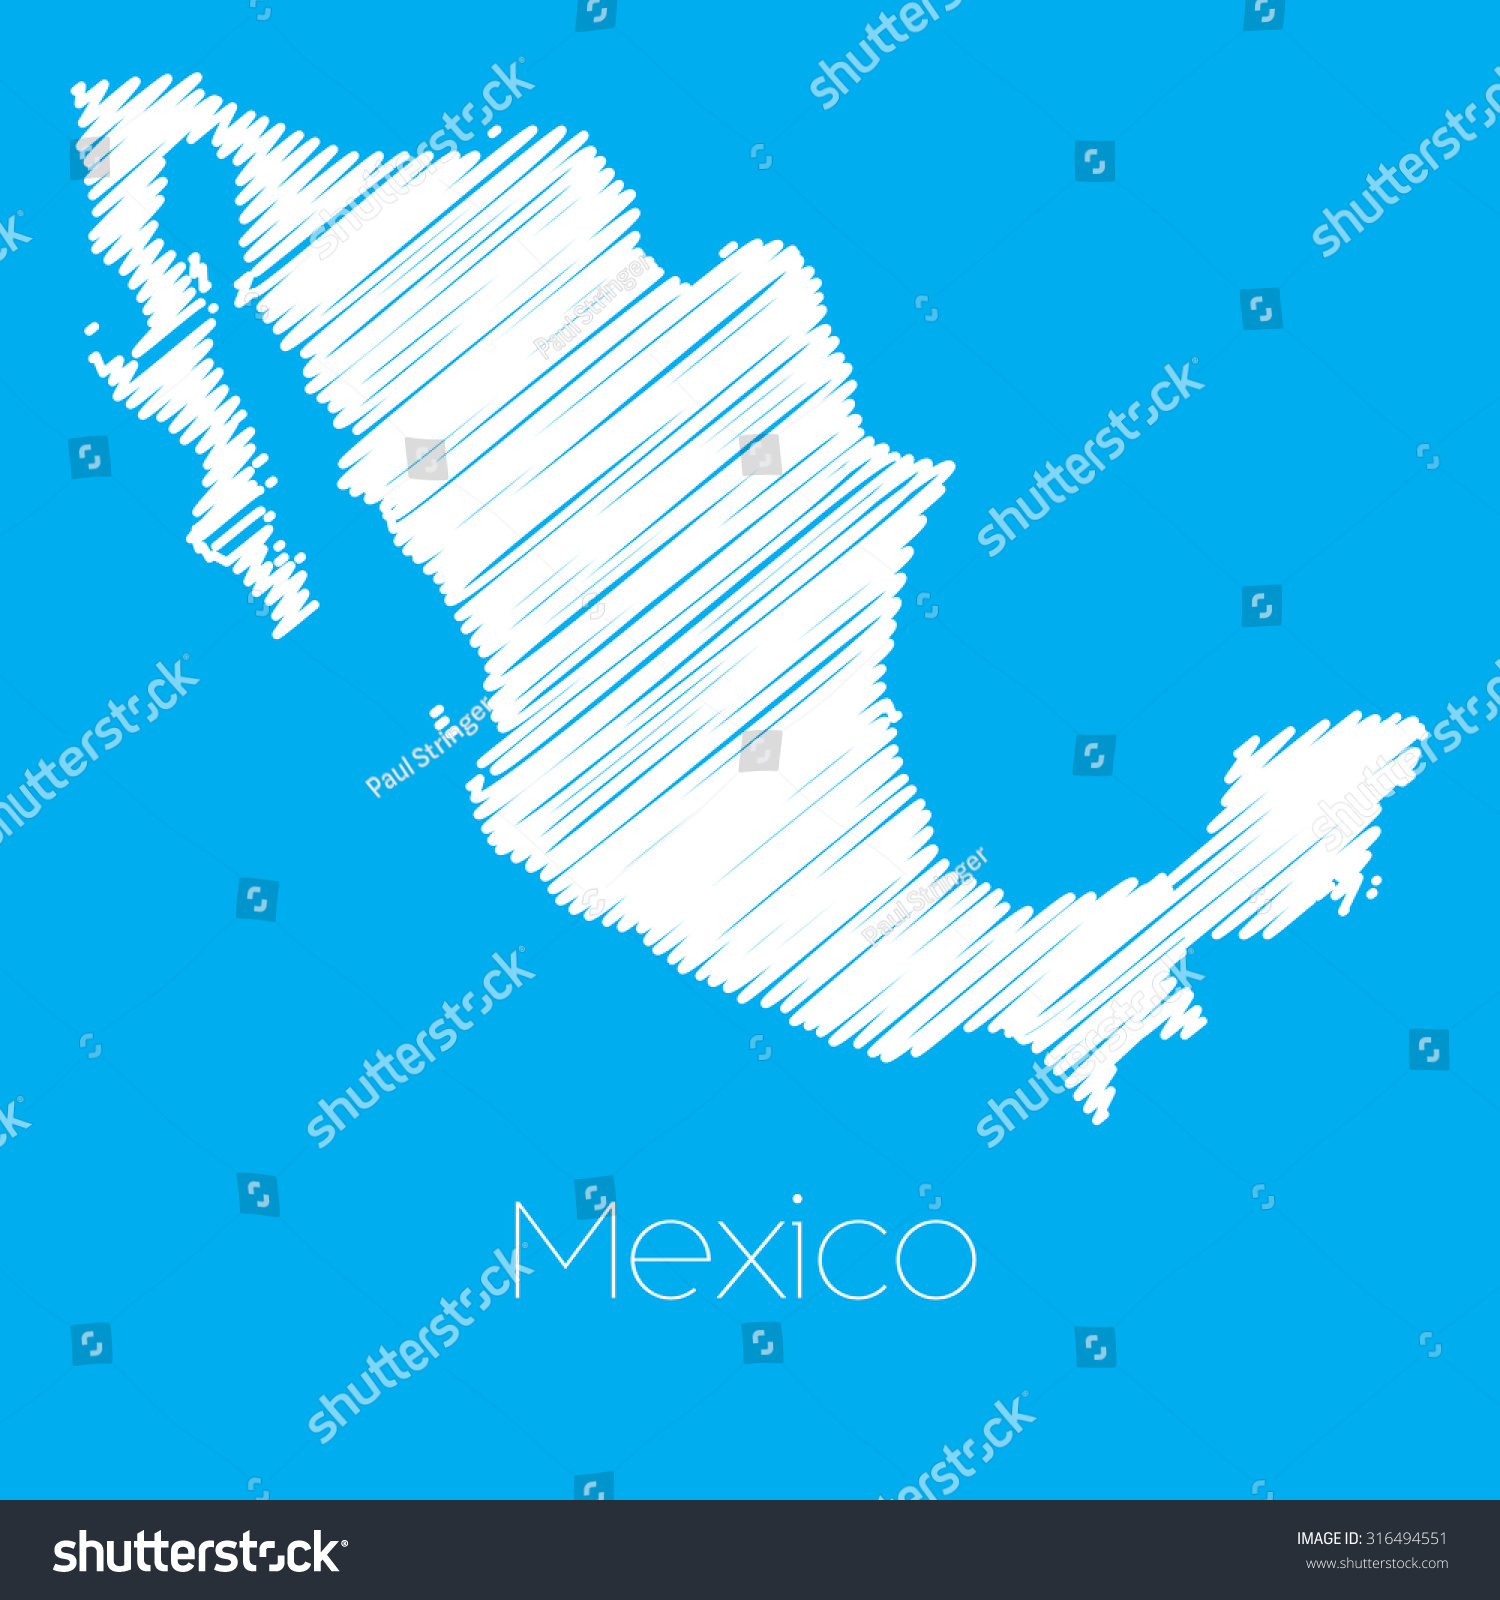 墨西哥国家的地图-建筑物\/地标,物体-海洛创意